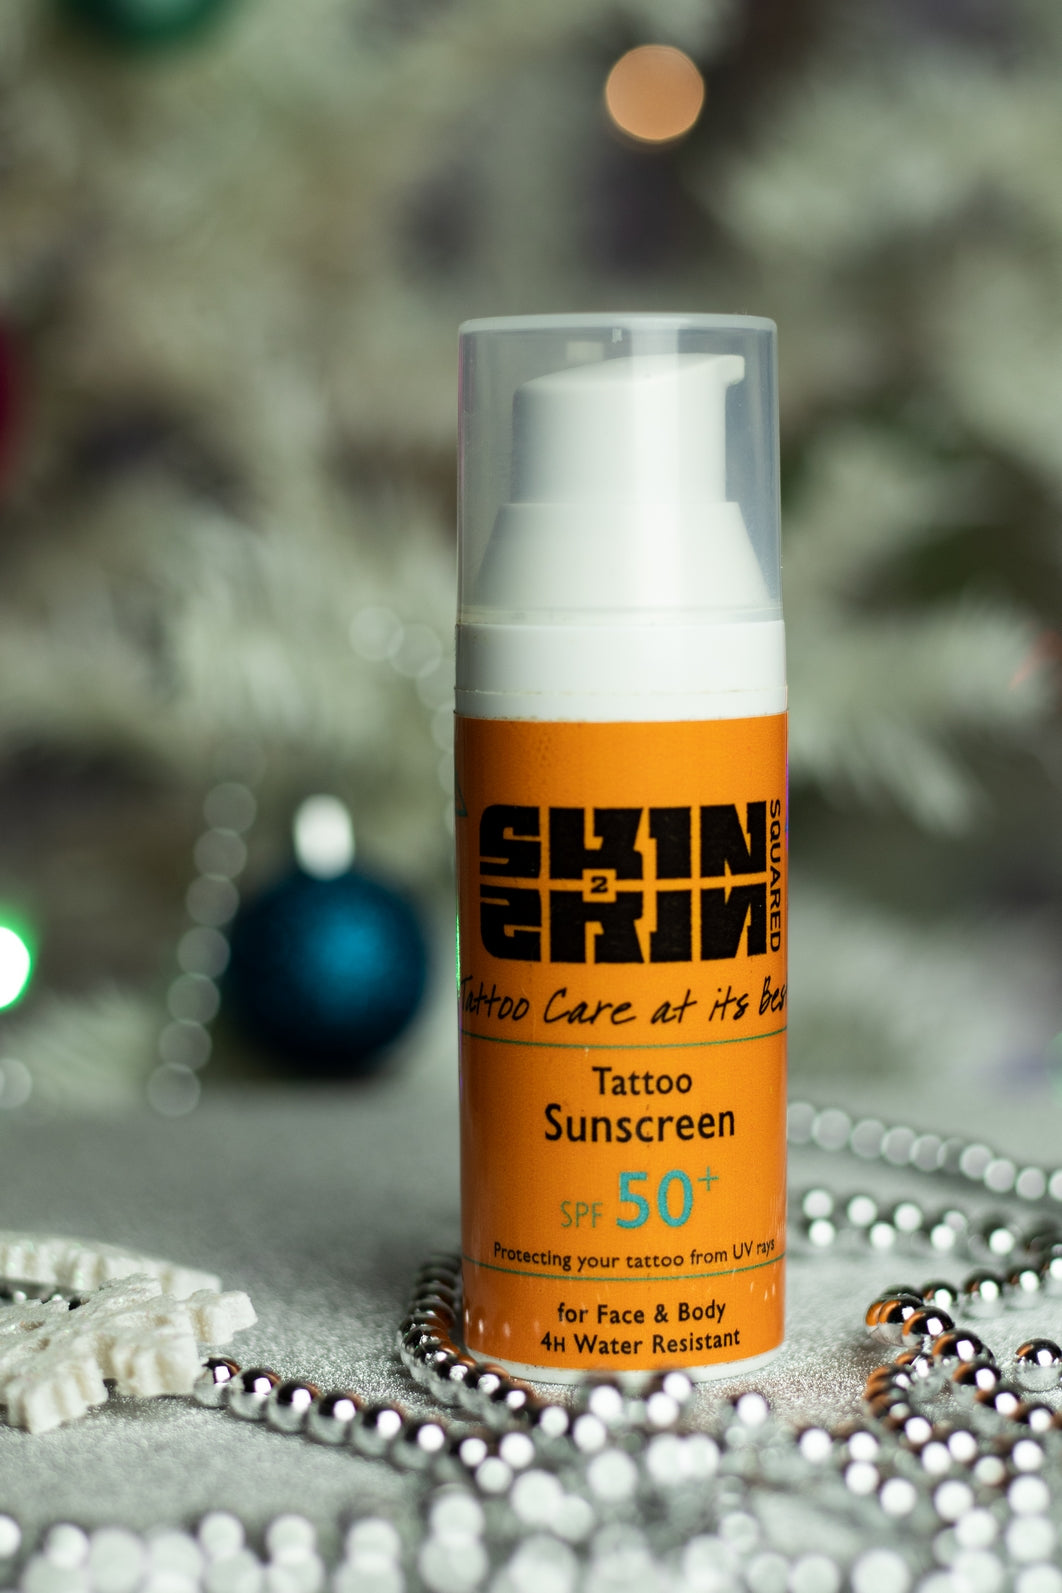 Skin2Skin Tattoo Sunscreen SPF50+